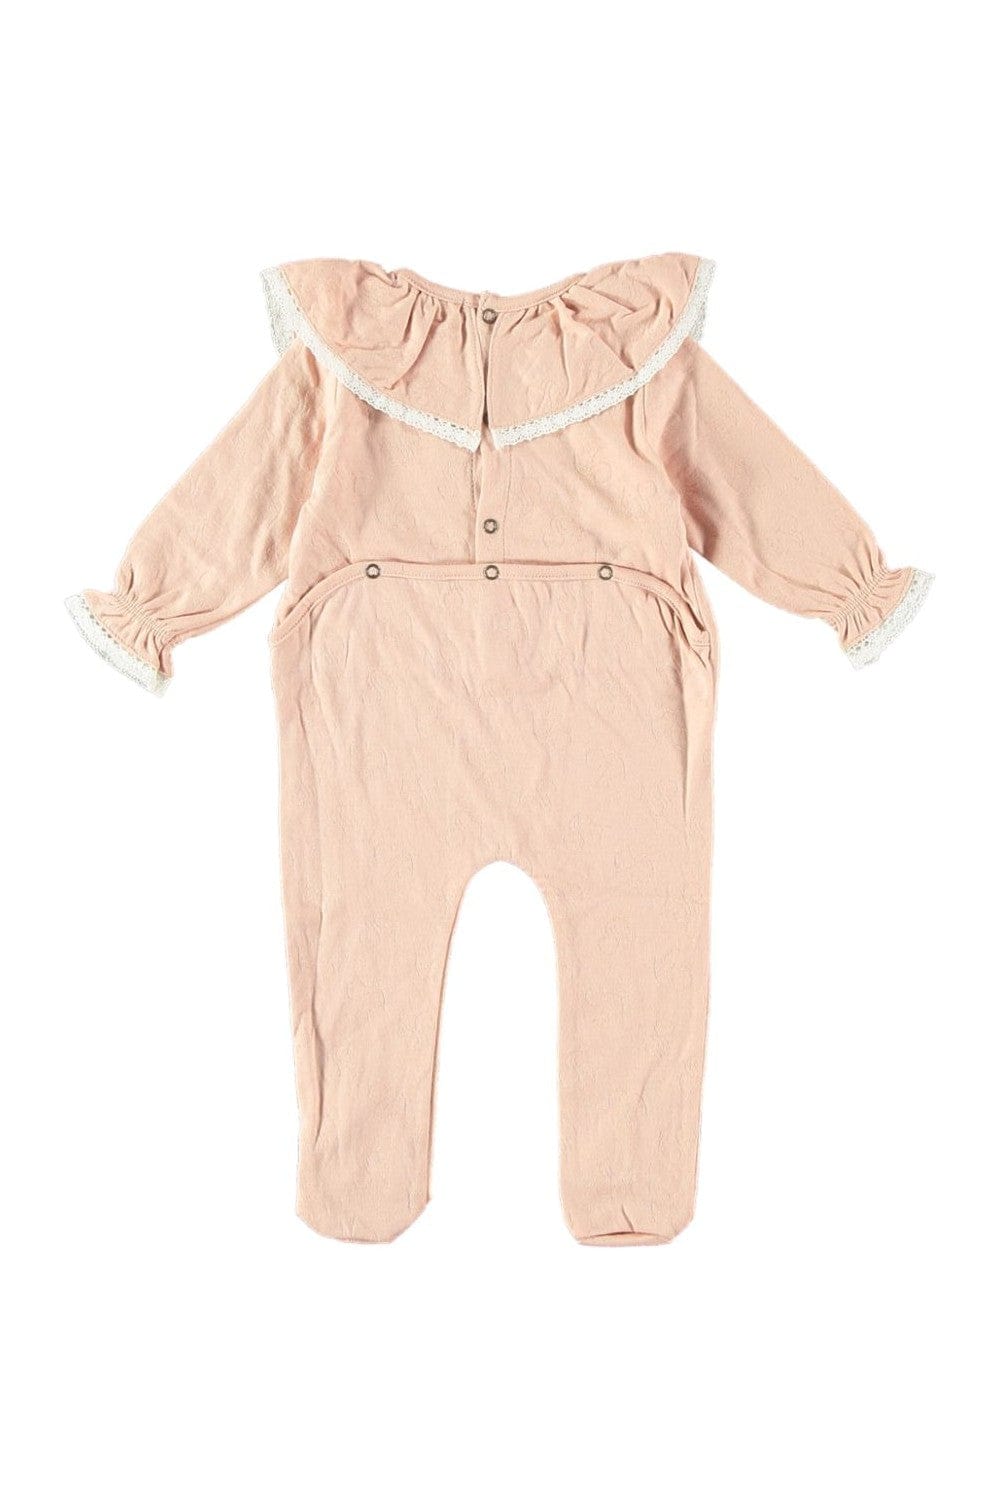 Risu Risu Sleepwear Ballerine Baby Pyjamas